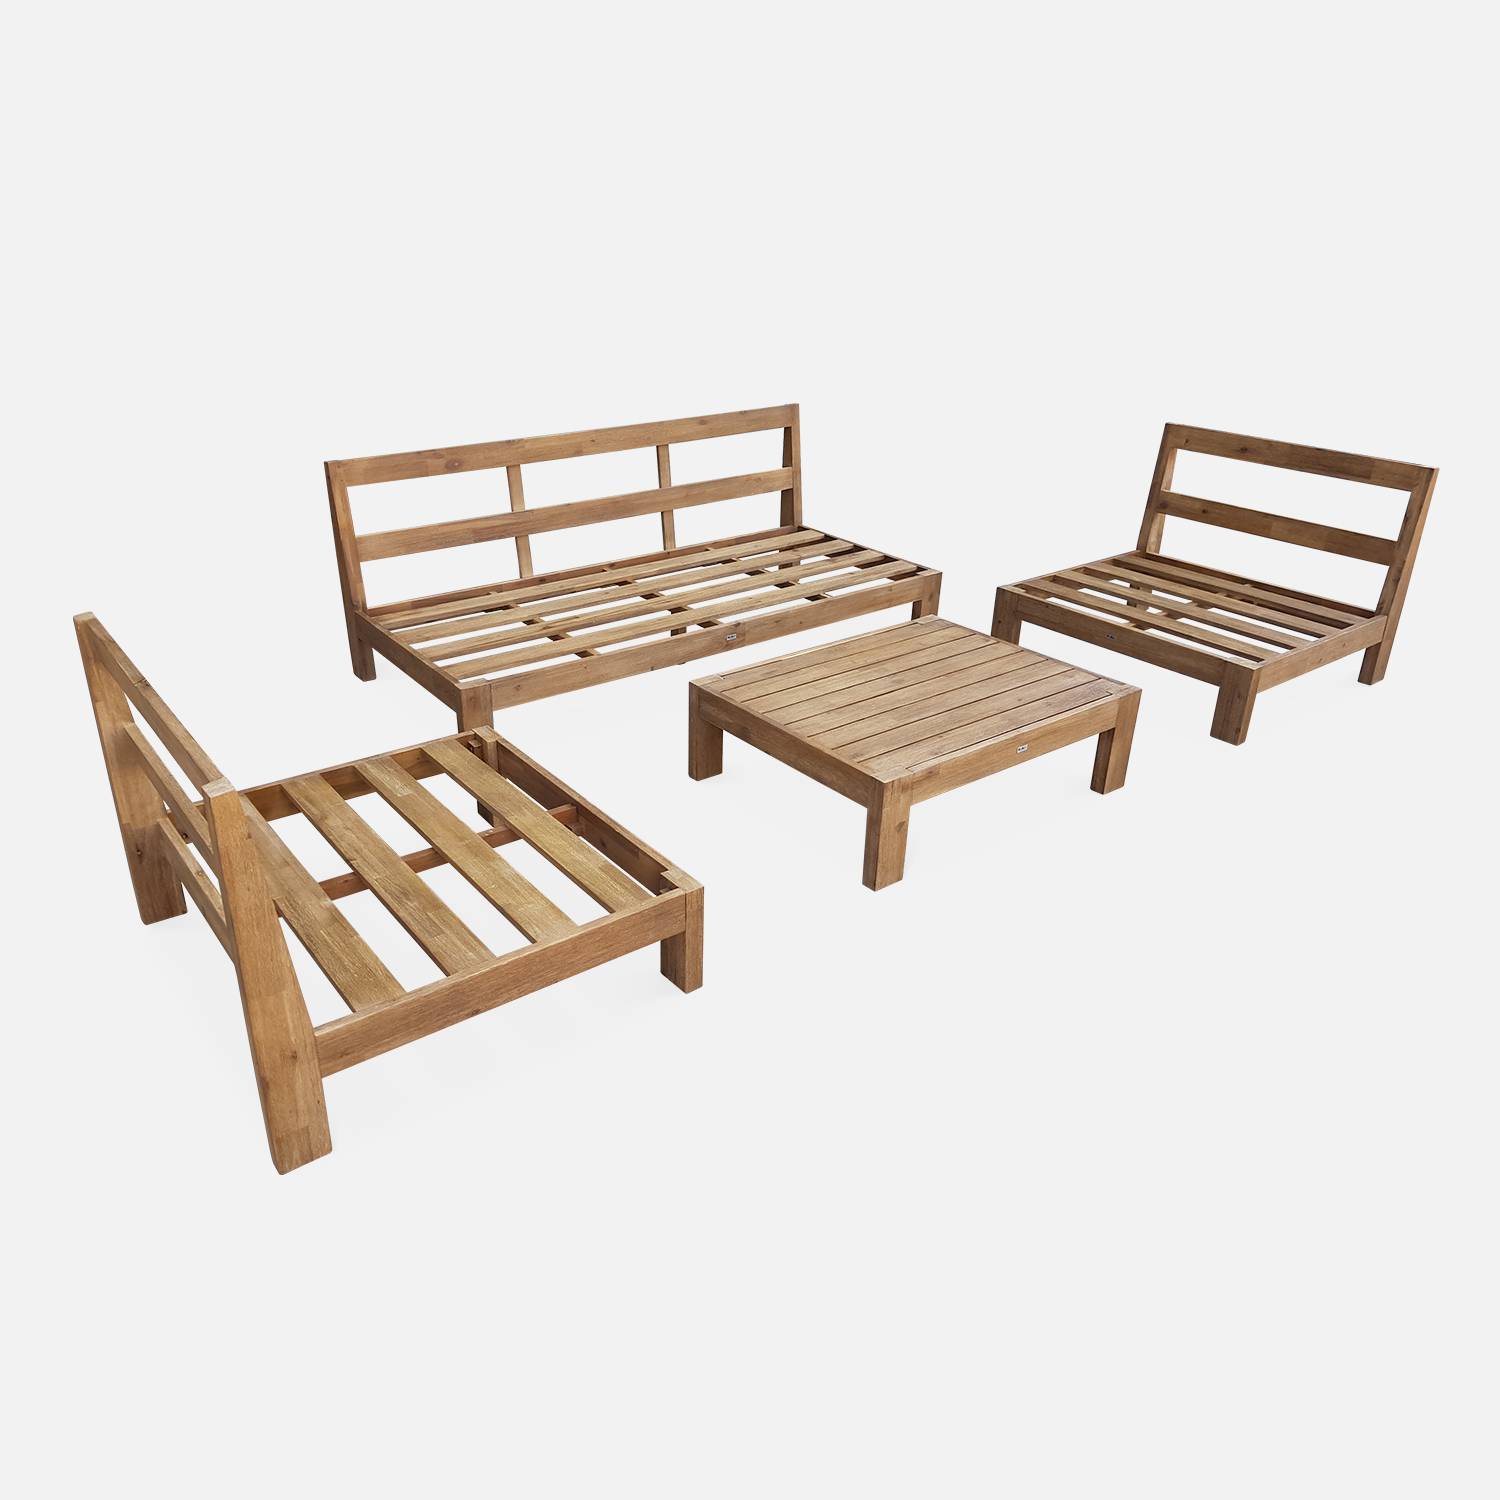  Conjunto de móveis de jardim XXL em madeira escovada, efeito branqueado - BAHIA - almofadas bege, ultra confortáveis, 5 a 7 lugares garden-lounge-xxl-wood-brush-white-bahia-cushions-beige Photo9